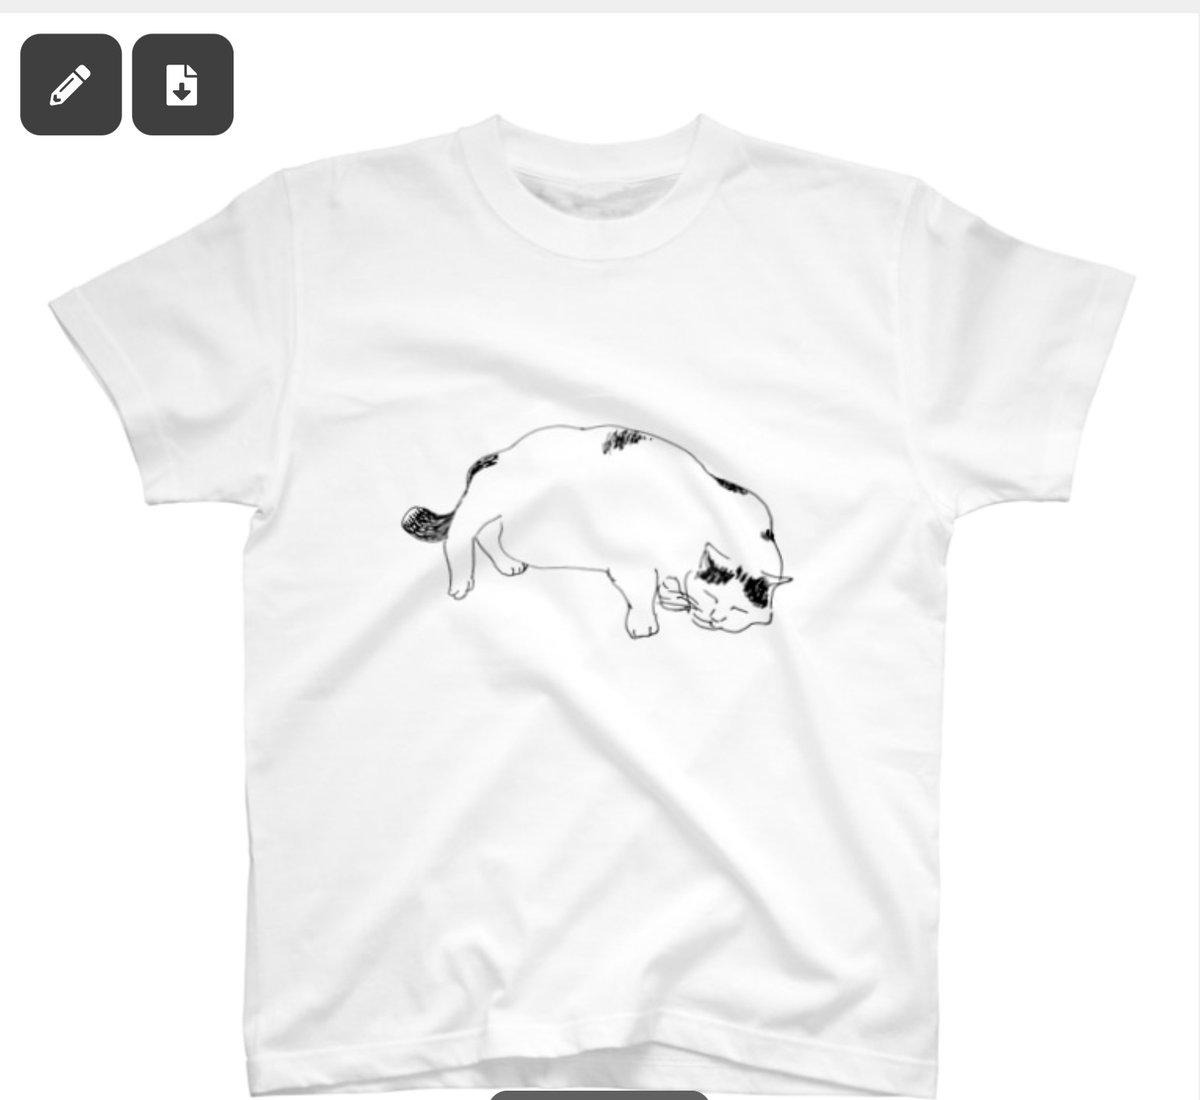 スズリのTシャツセールは明日まで!
よろしくお願いします〜🌳🐓🌳

佐久間薫のイナズマを集める猫Tシャツ https://t.co/aCj8Sr1jId #suzuri 